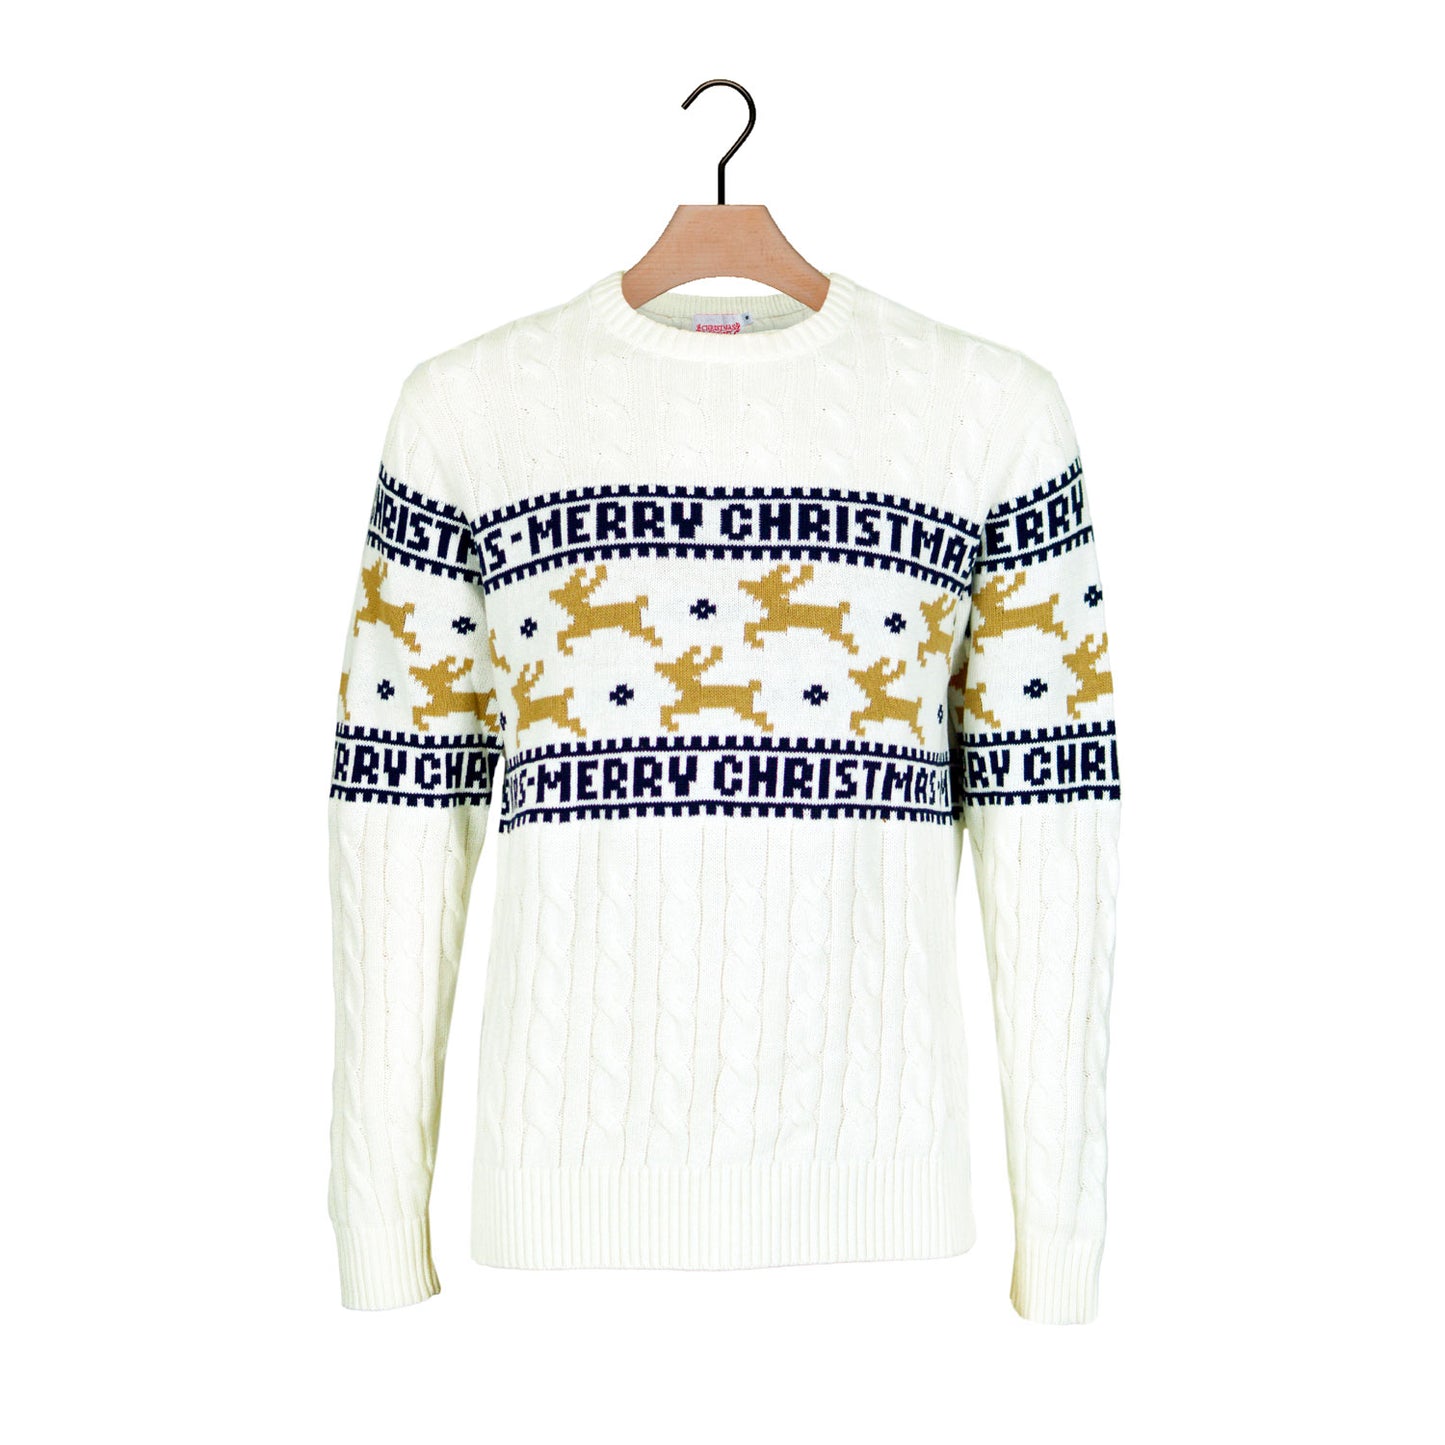 Biały Sweter Świąteczny Bawełny Organicznej Elegancki z Reniferami